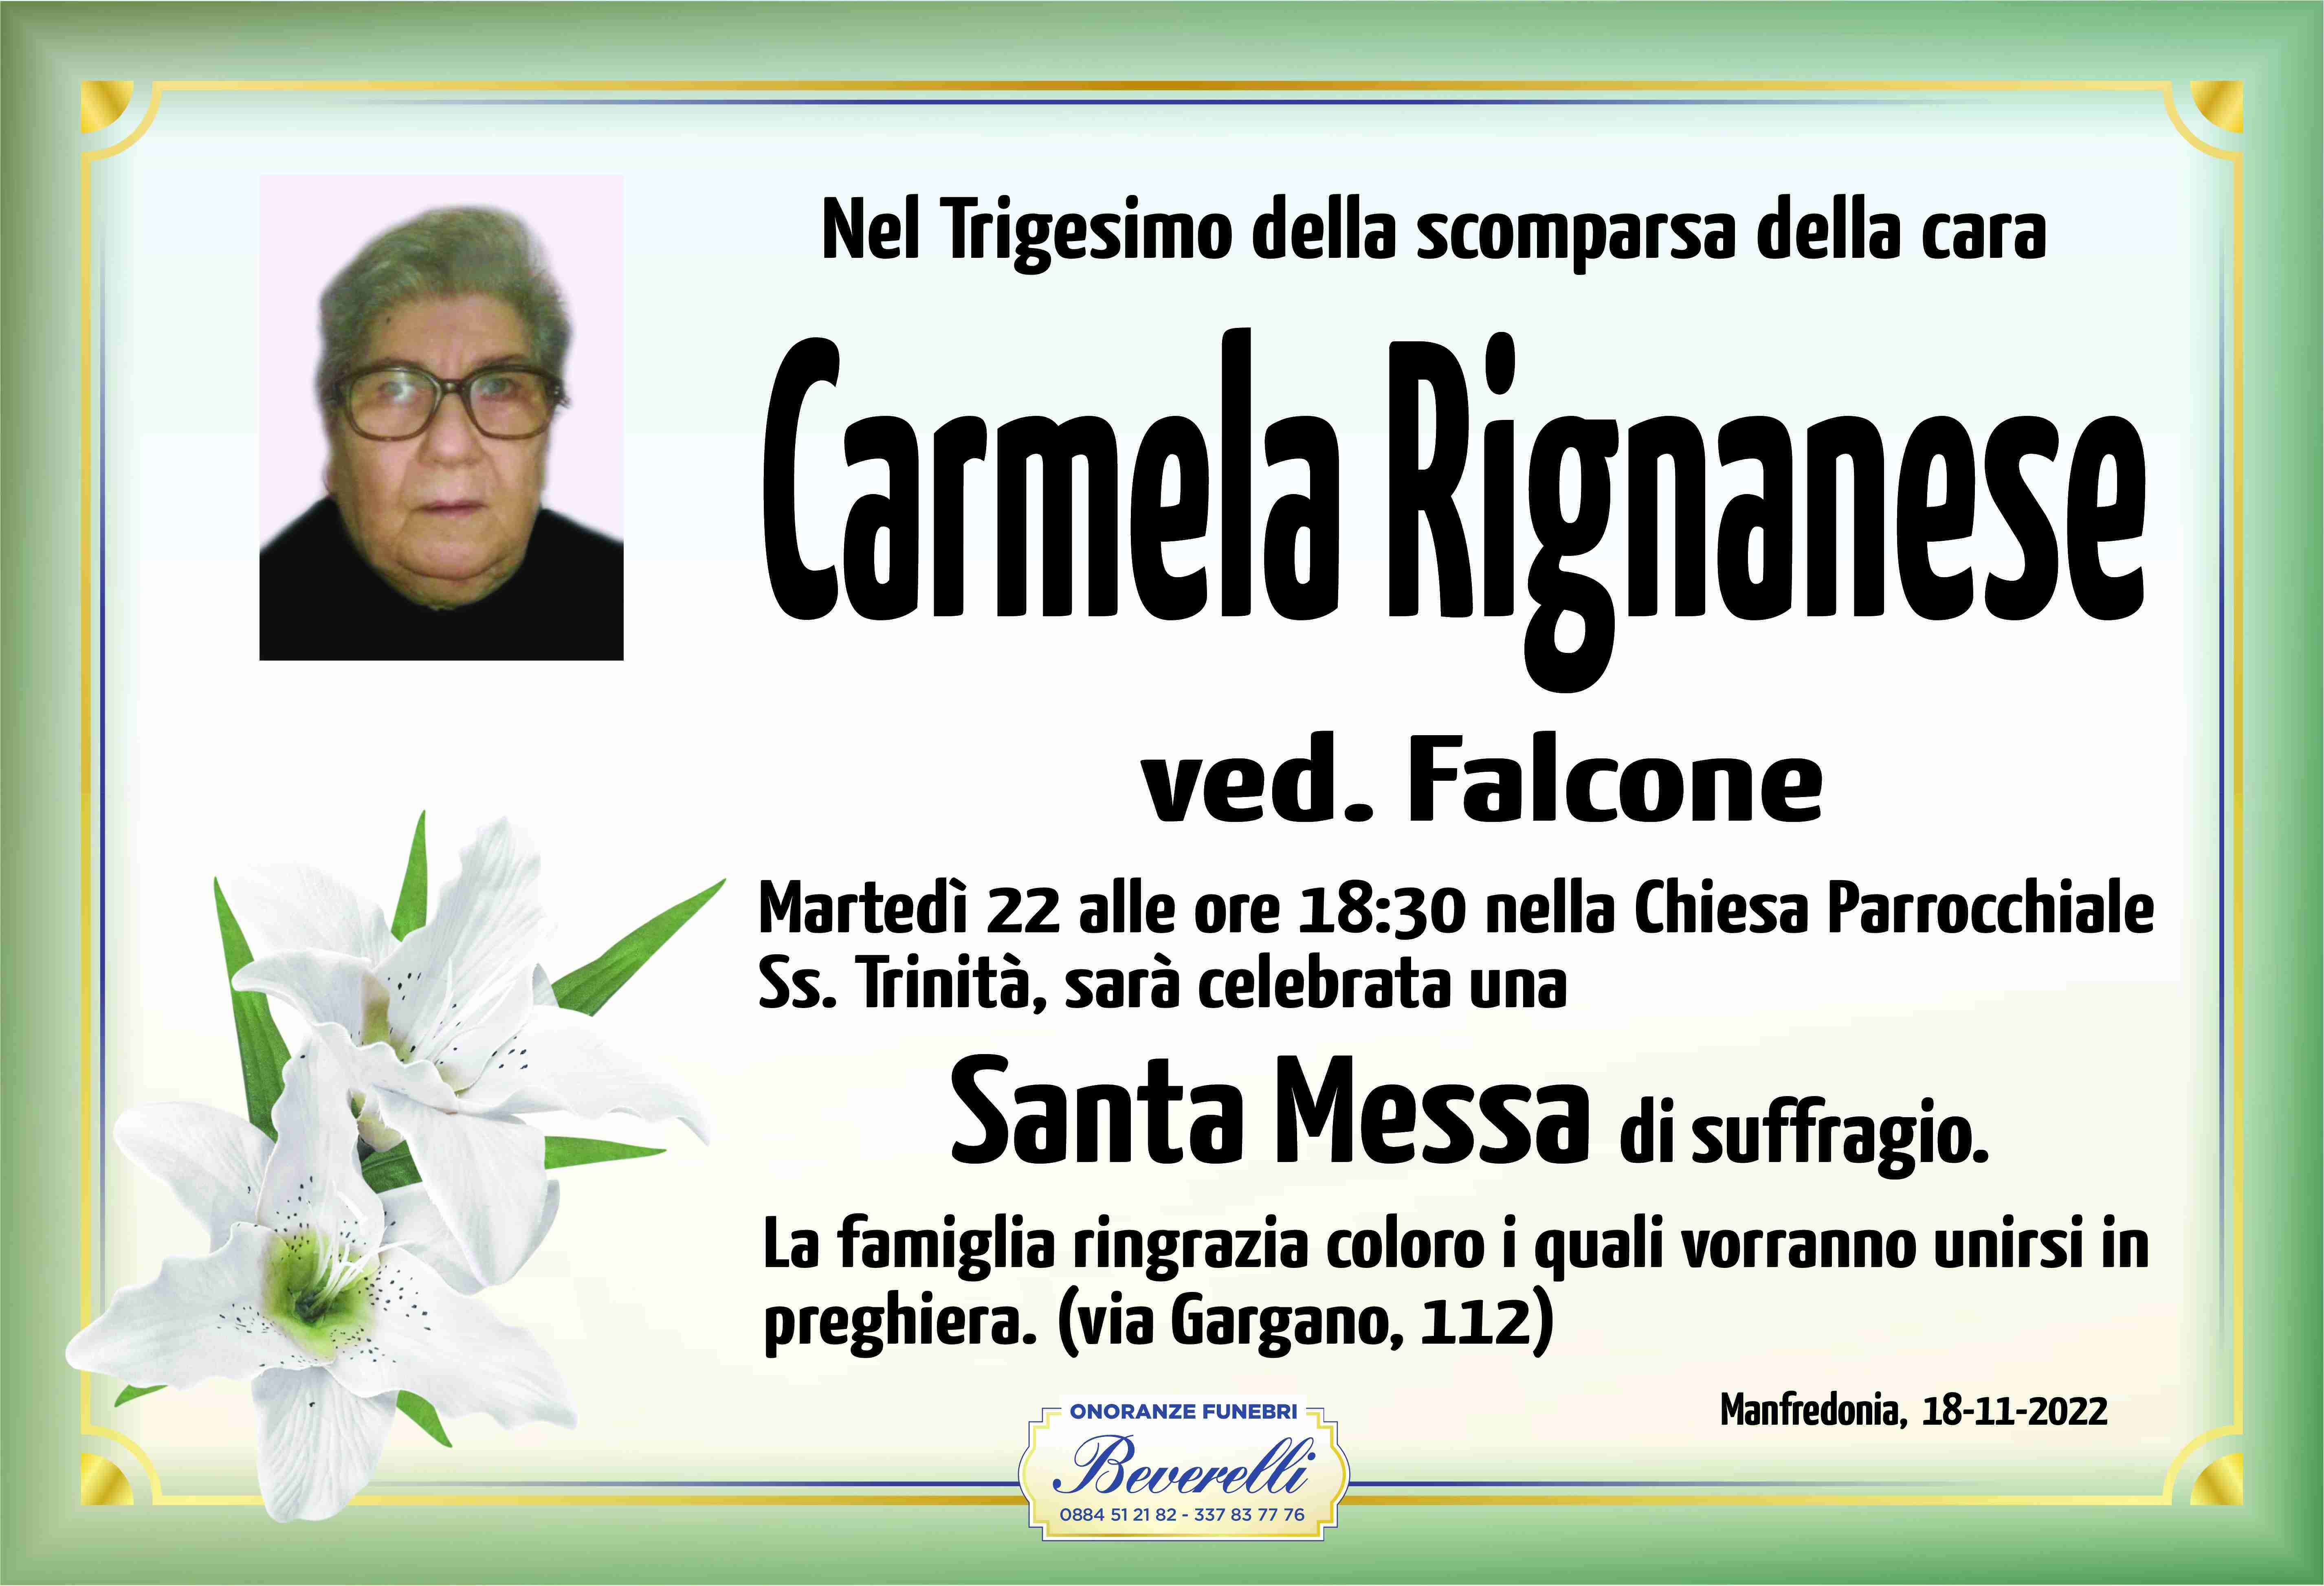 Carmela Rignanese